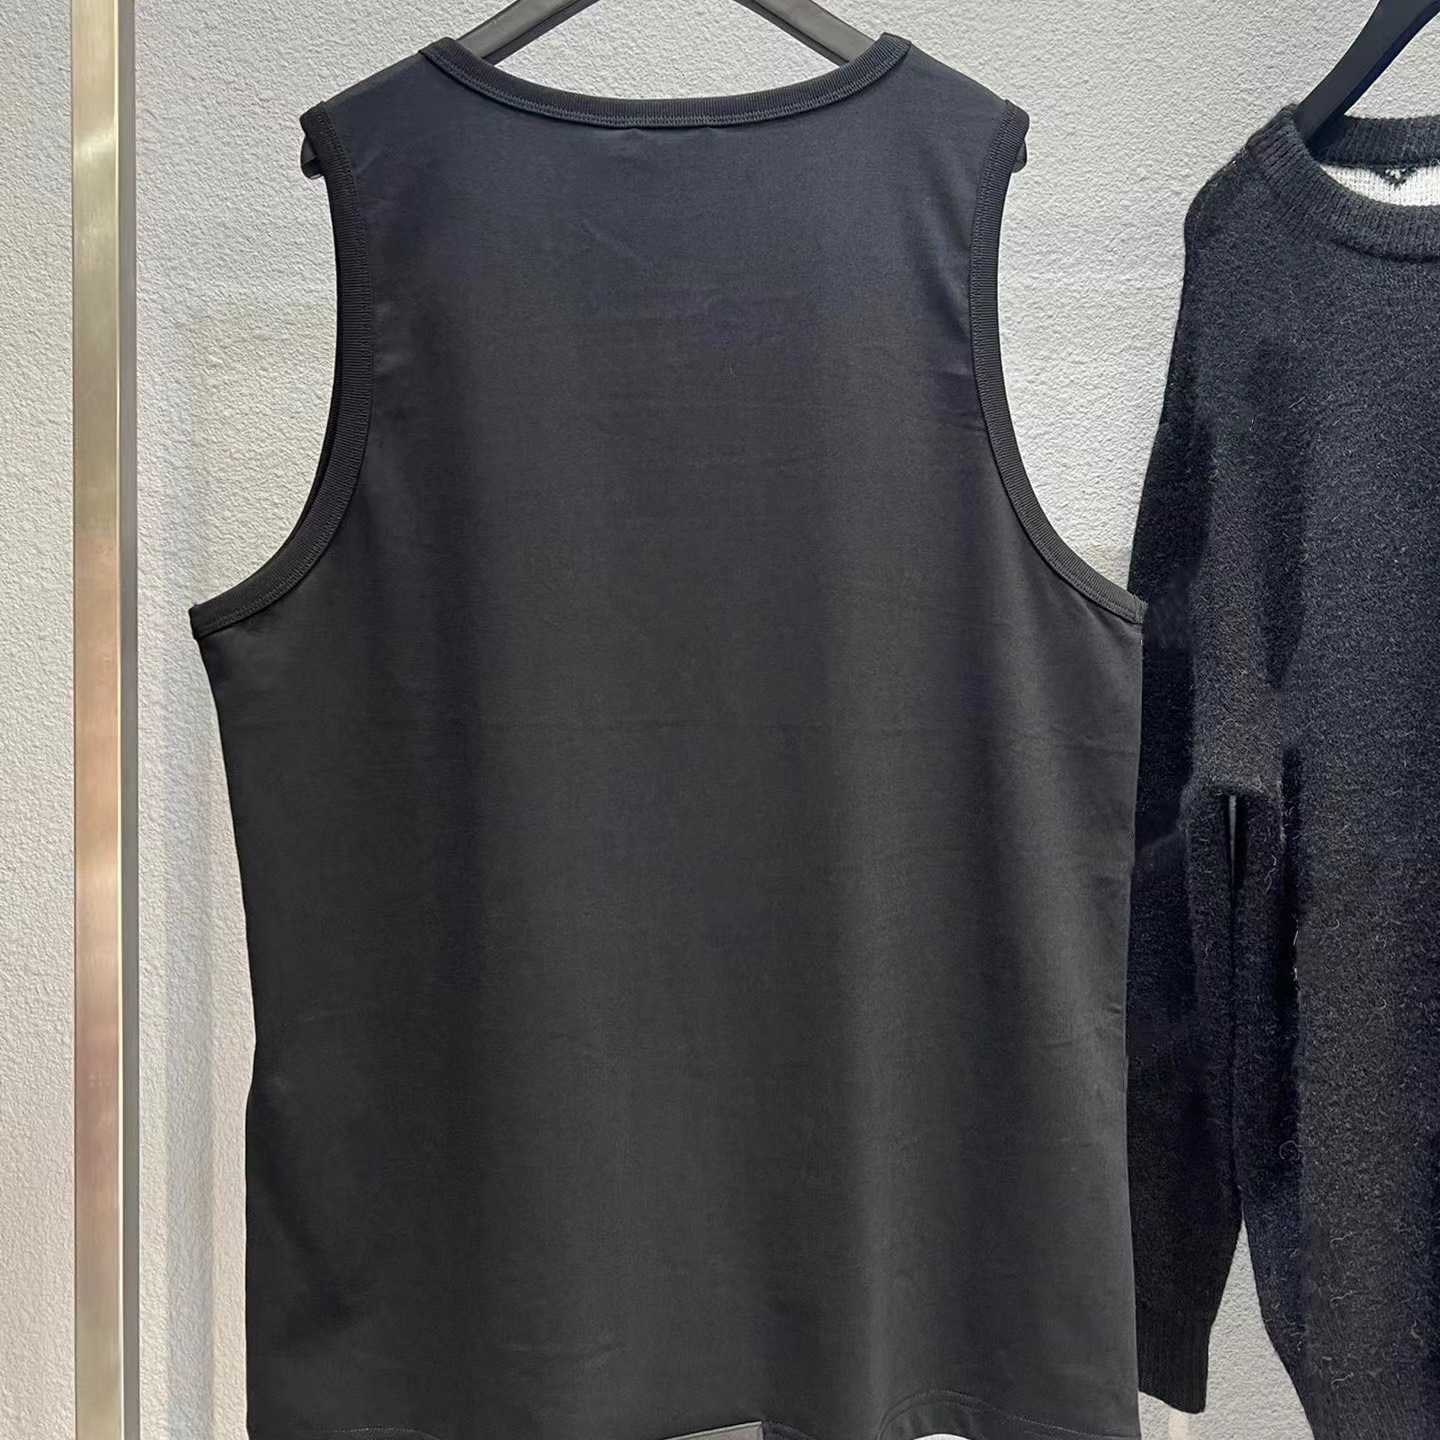 Vêtements pour femmes de créateurs 20% de réduction Premium Differentiated Market Edition T-shirt d'été sans manches House Solid Simple Loose Versatile Tank Top